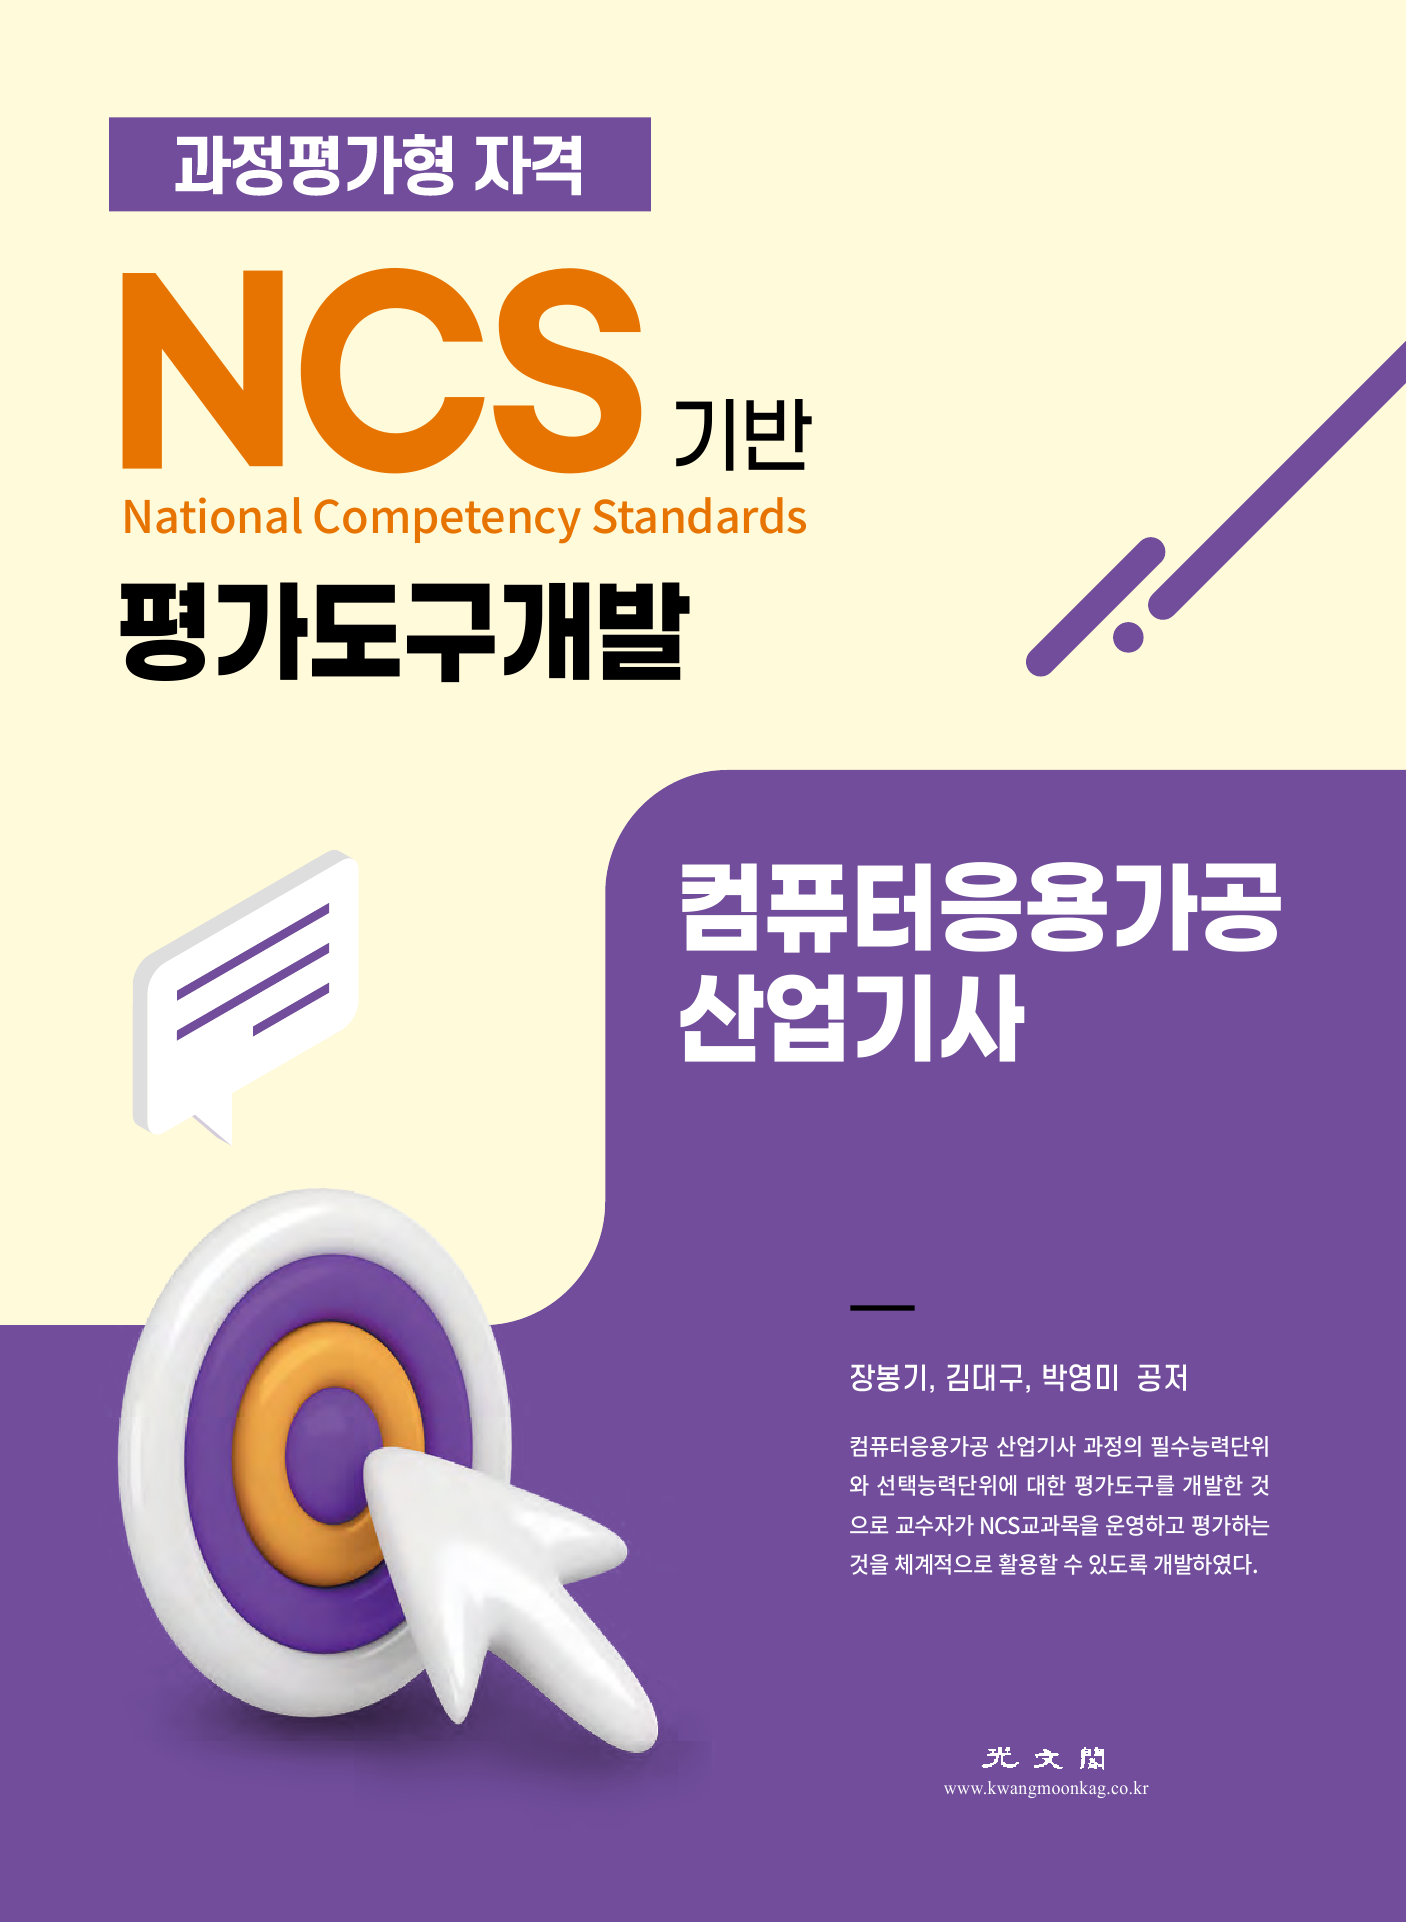 NCS기반 평가도구 개발(컴퓨터응용가공 산업기사 대비)